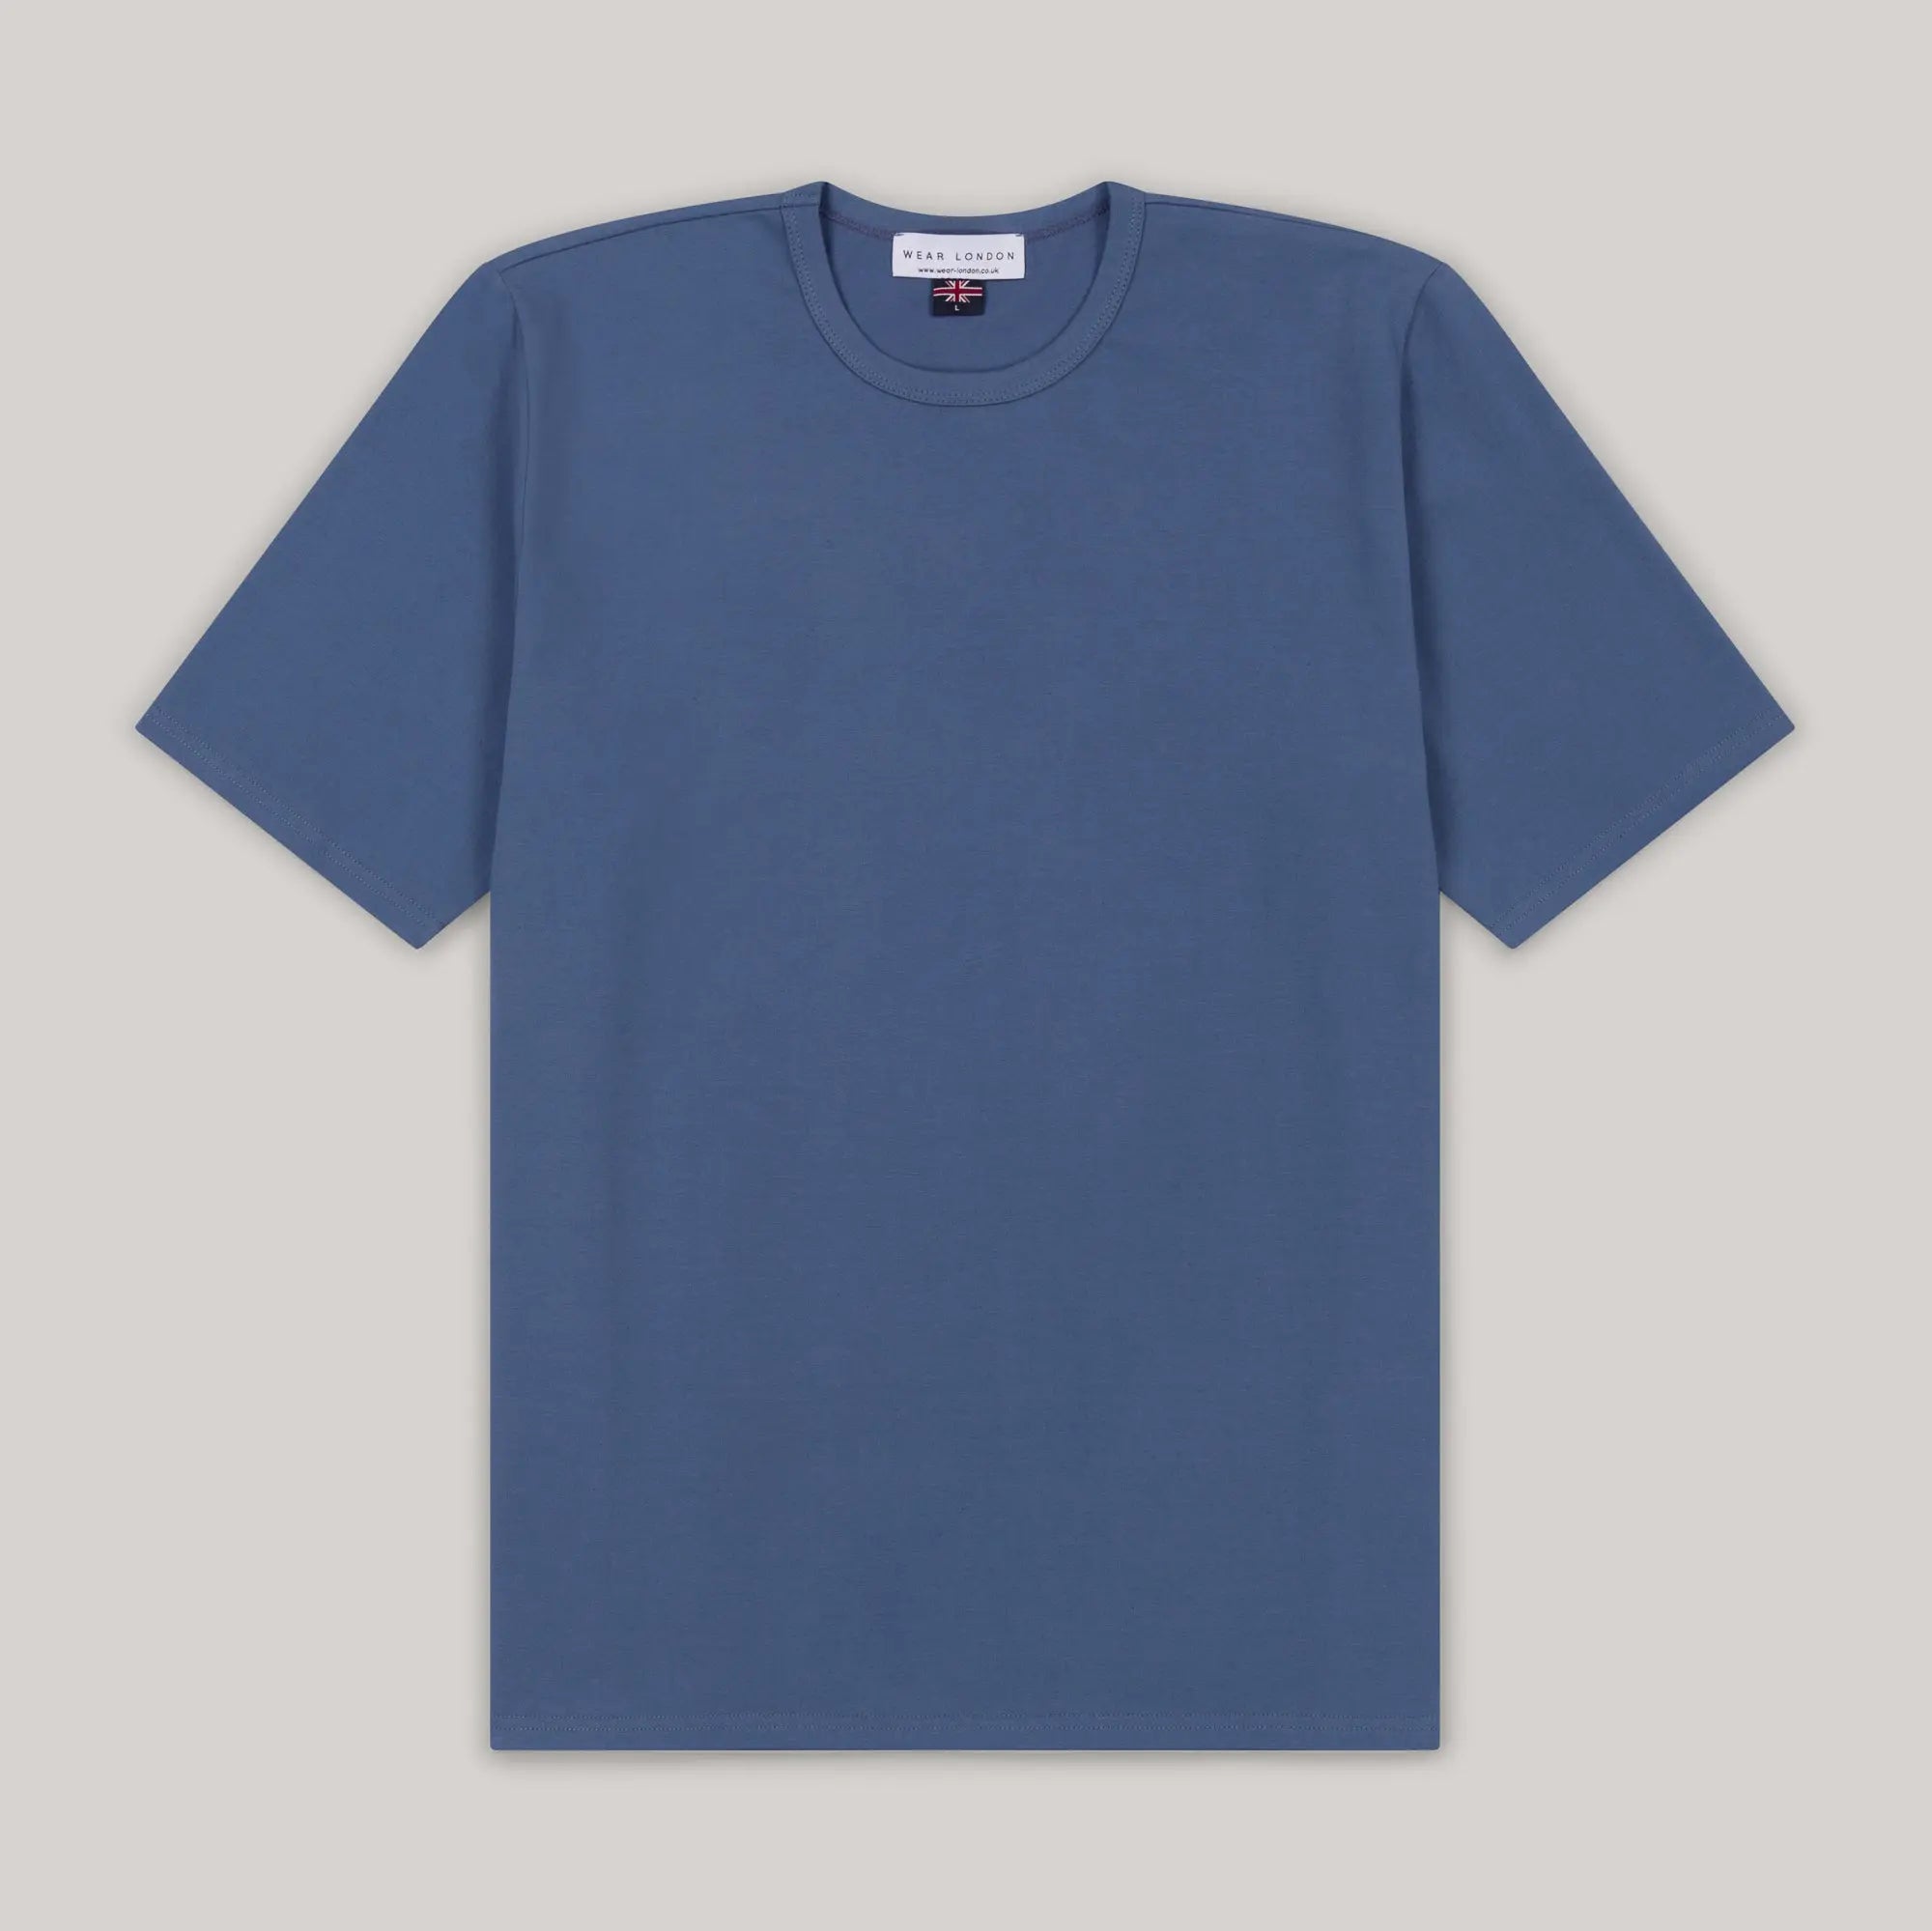 Trueman Short Sleeve T-Shirt - Denim - Wear London